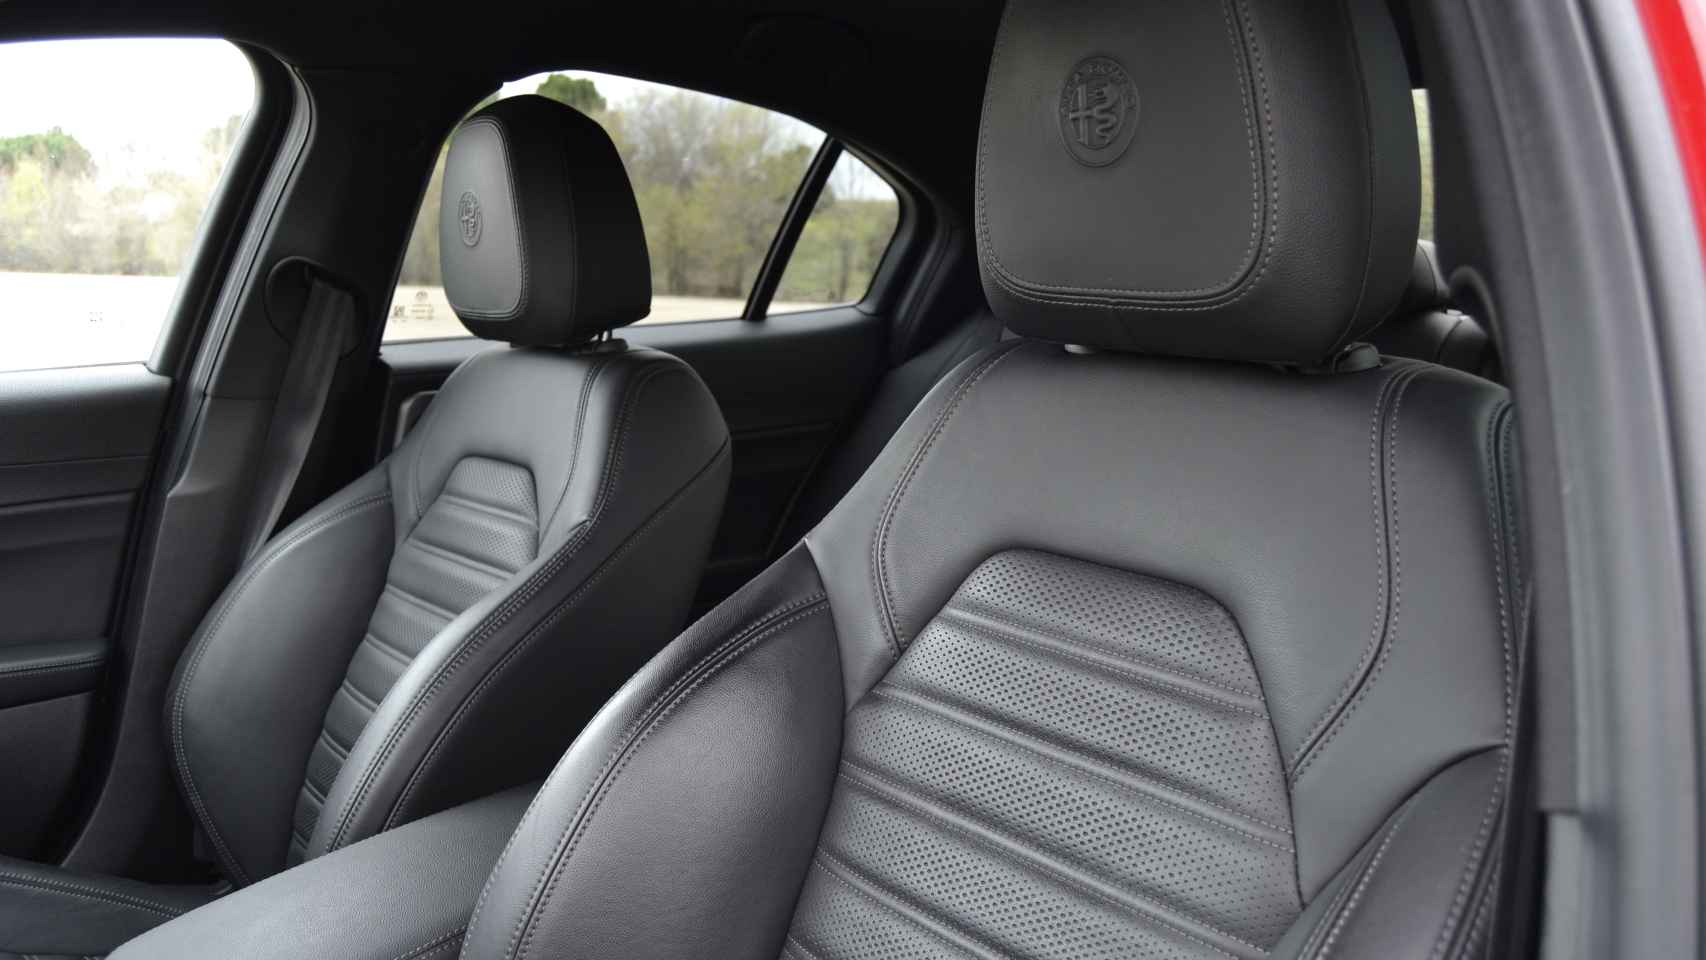 Los acabados del interior son de alta calidad e incorpora asientos de cuero.